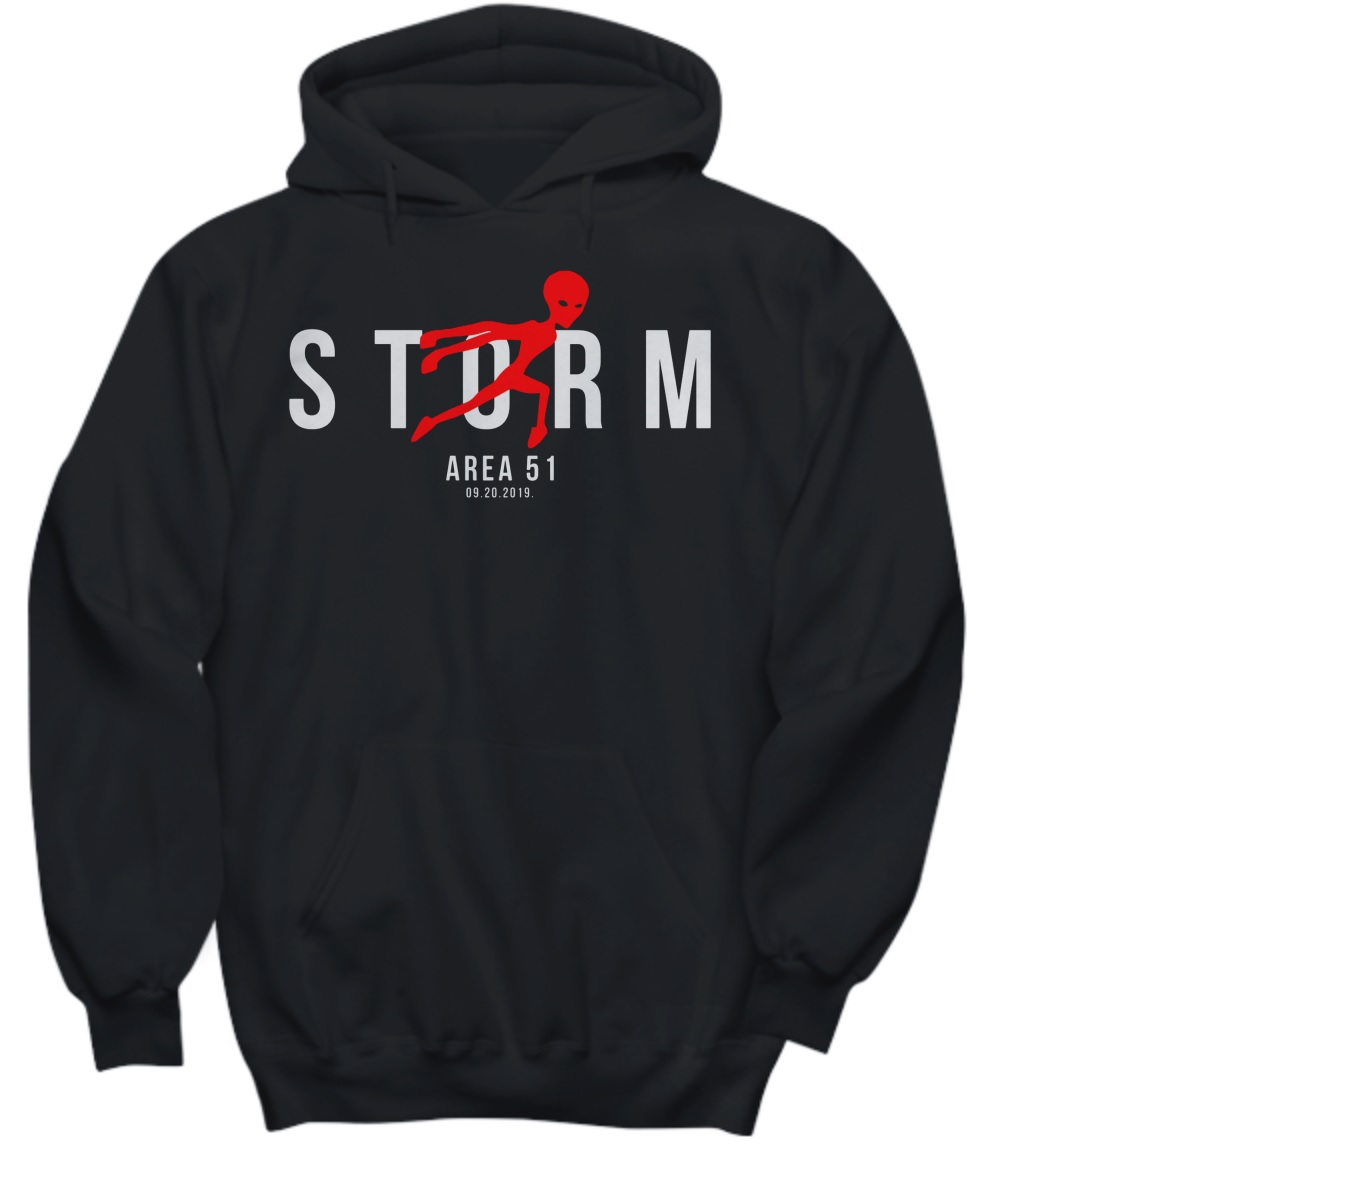 Alien storm area 51 09 20 2019 air jordan hoodie